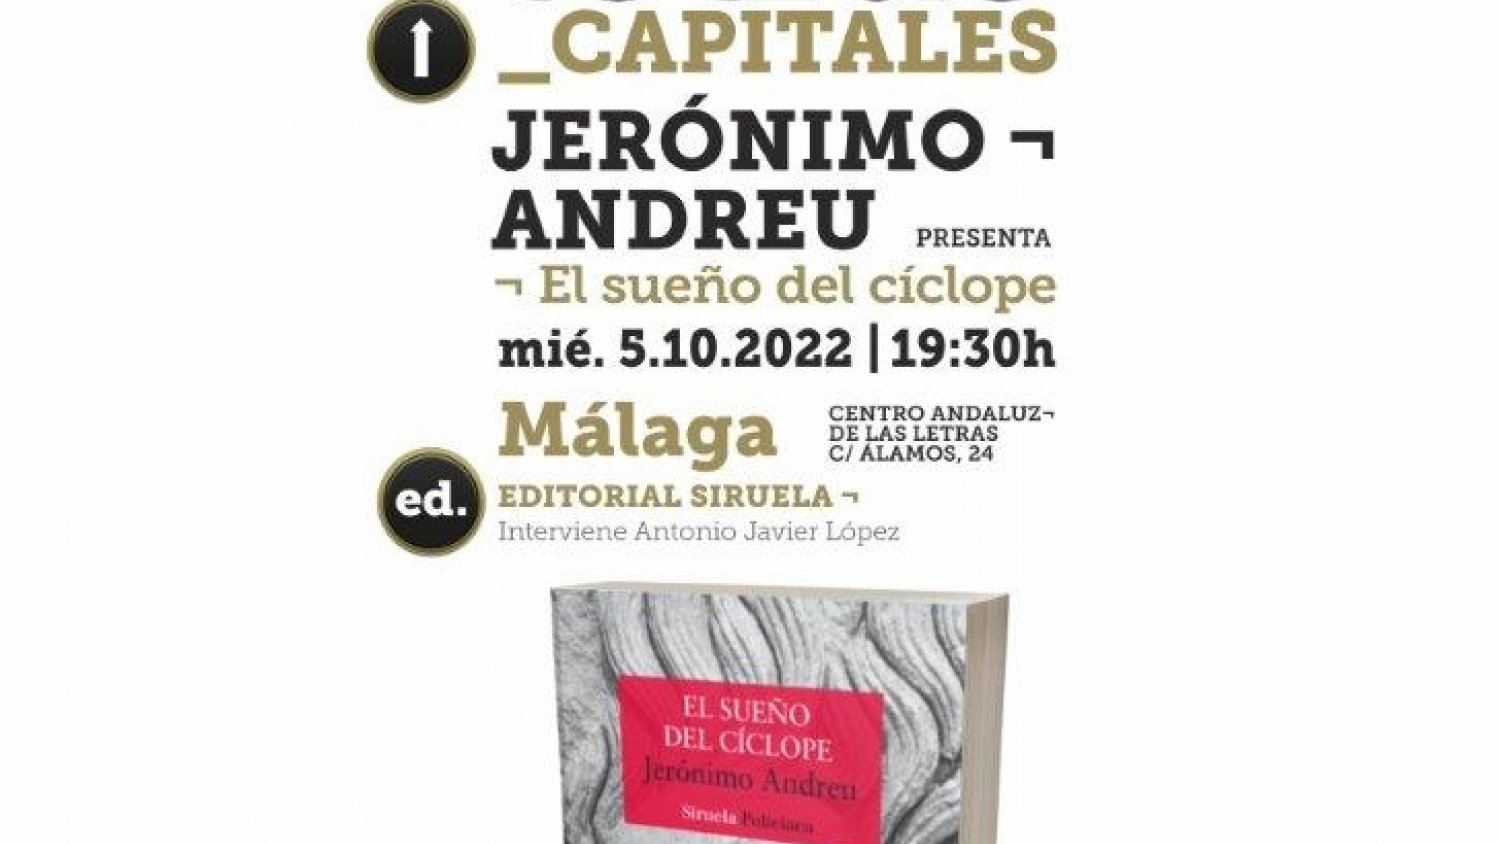 El Centro Andaluz de las Letras presenta el nuevo libro de Jerónimo Andreu en Málaga